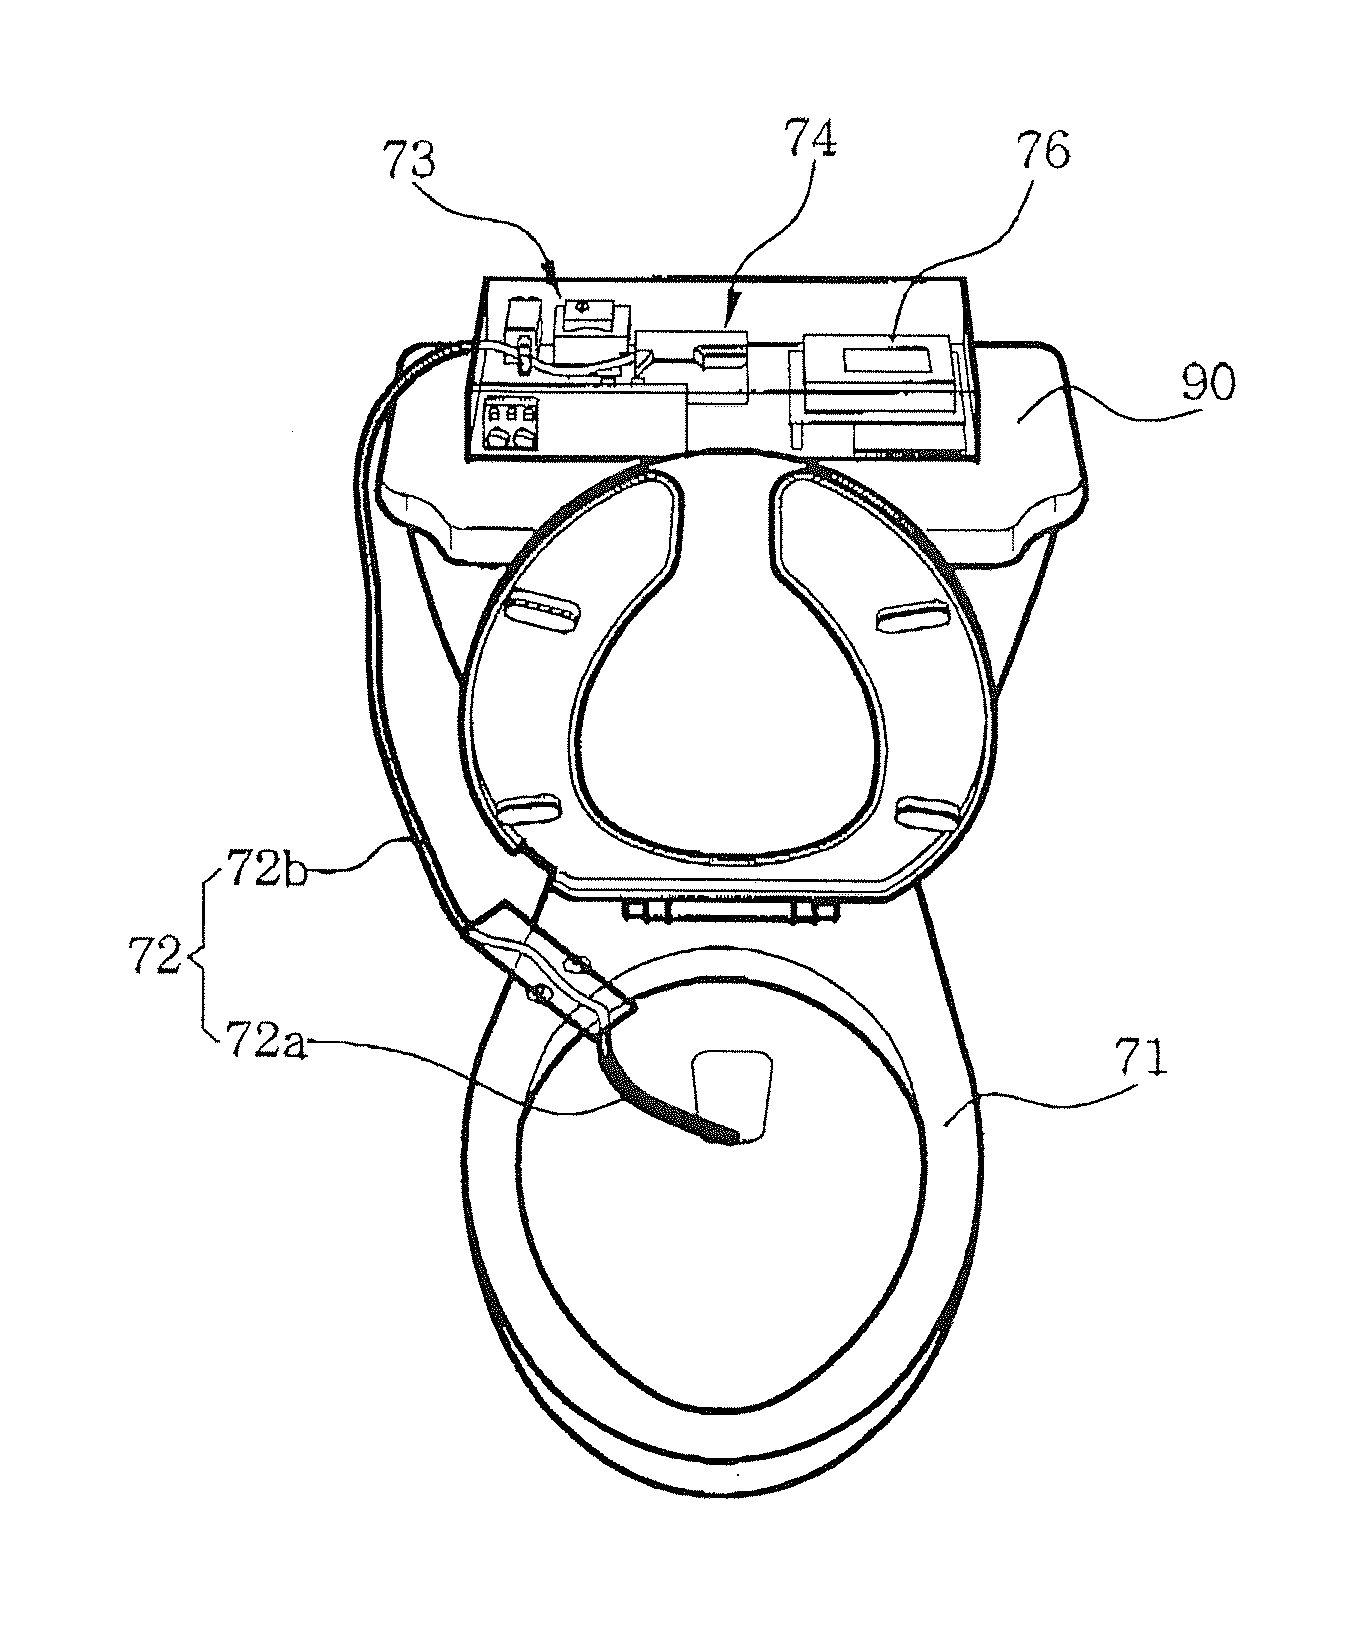 Uroflowmeter attachable to toilet